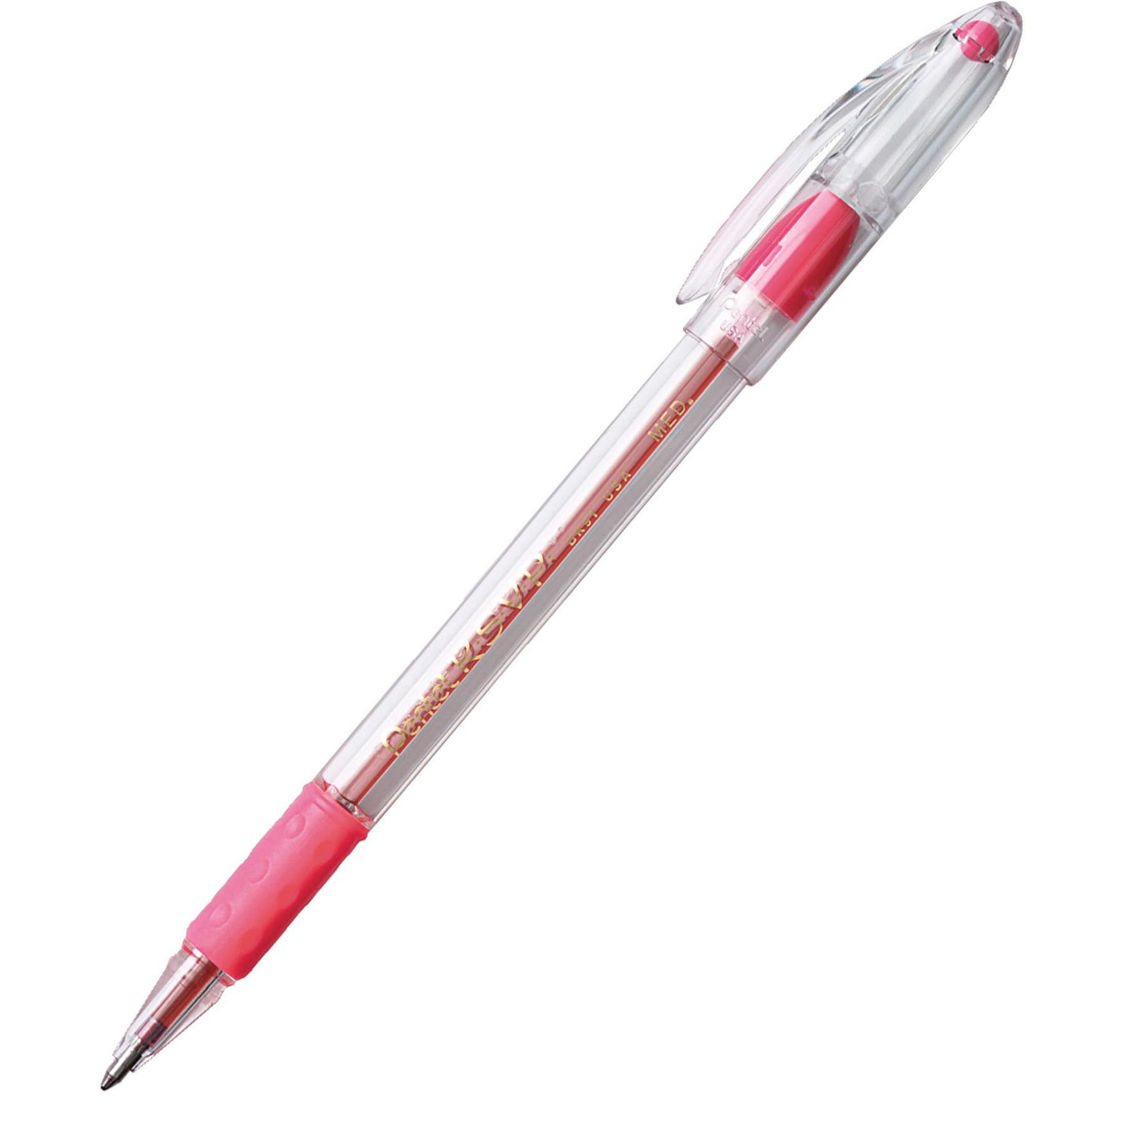 Pentel® R.S.V.P.® Ballpoint Pen, Medium Point, Pink, Pack of 24 - Image 2 of 4